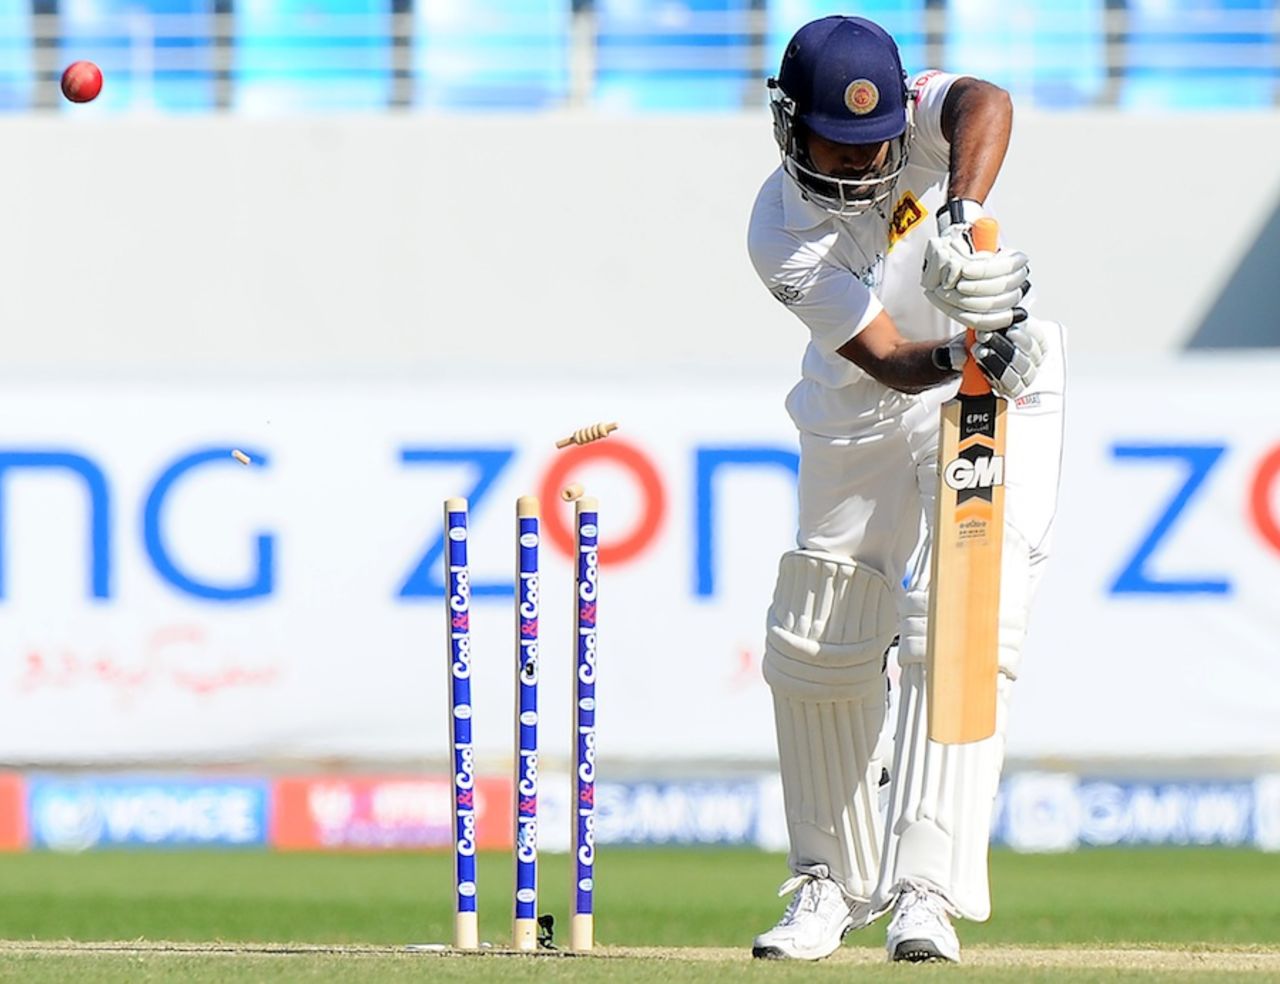 Prasanna Jayawardene was bowled for 9, Pakistan v Sri Lanka, 2nd Test, Dubai, 3rd day, January 10, 2014